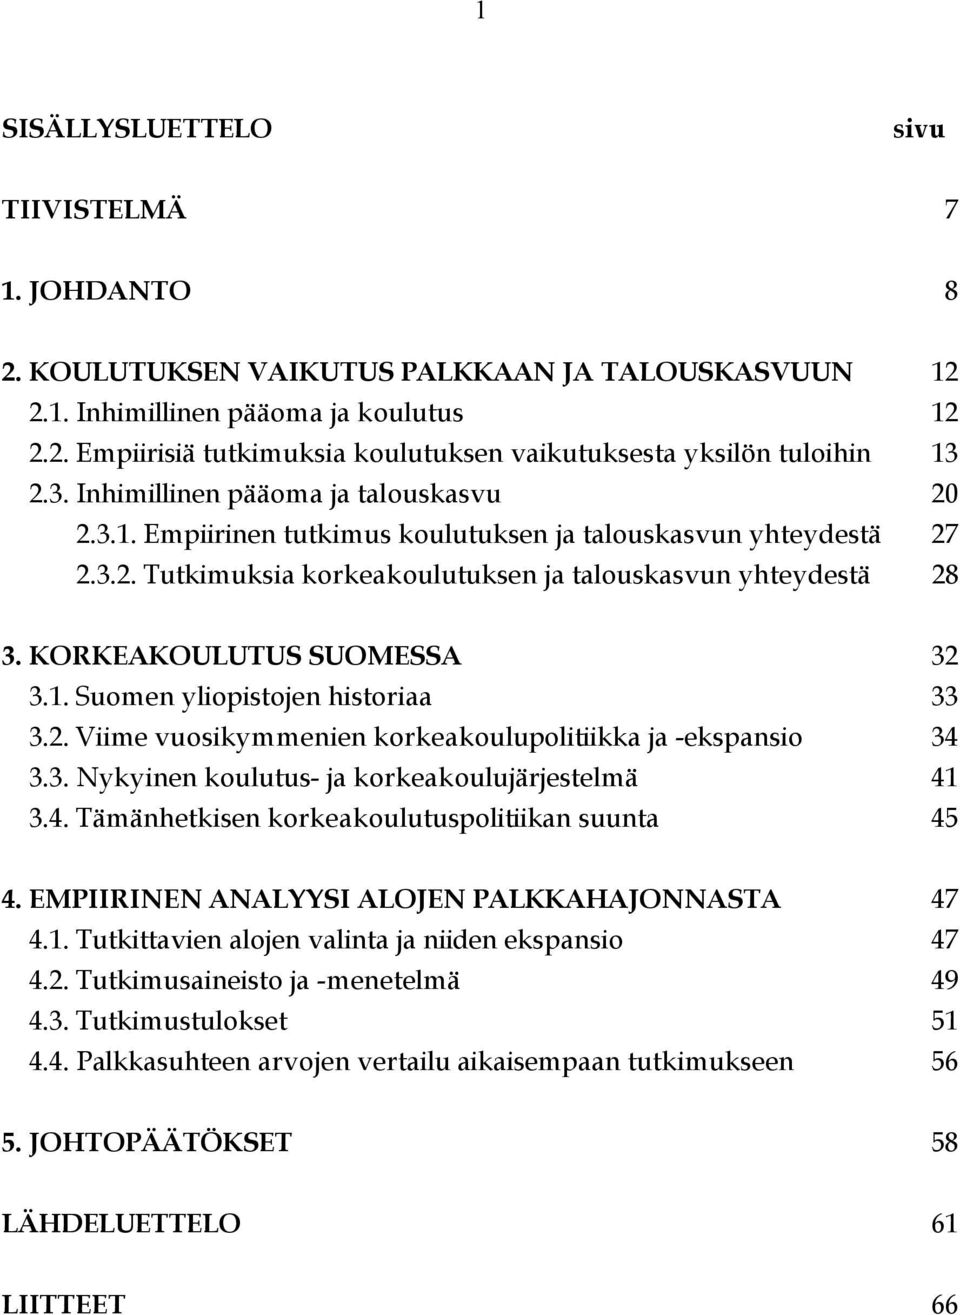 KORKEAKOULUTUS SUOMESSA 32 3.1. Suomen yliopistojen historiaa 33 3.2. Viime vuosikymmenien korkeakoulupolitiikka ja -ekspansio 34 3.3. Nykyinen koulutus- ja korkeakoulujärjestelmä 41 3.4. Tämänhetkisen korkeakoulutuspolitiikan suunta 45 4.